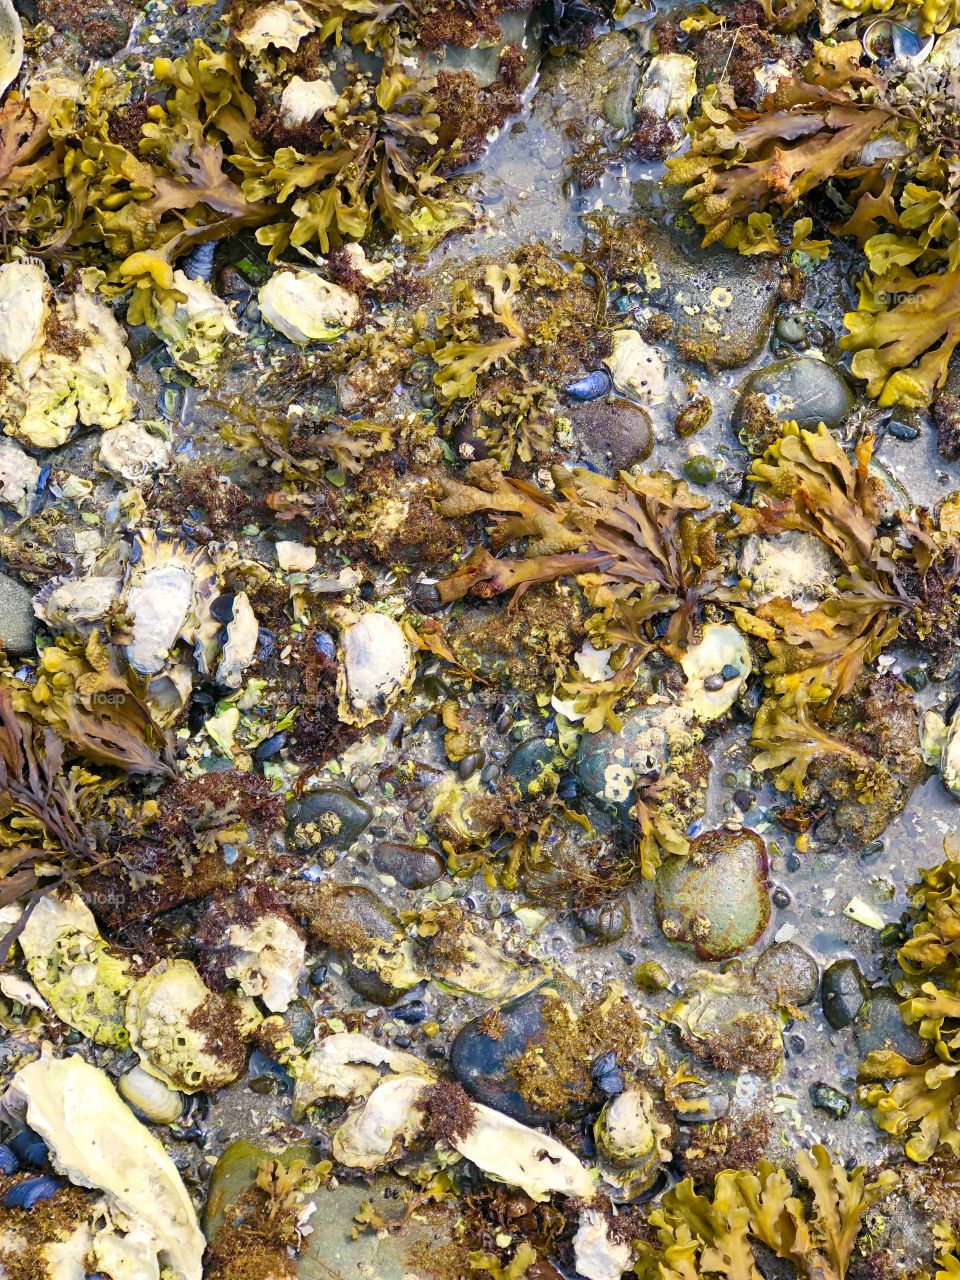 Seashore Ocean Beach Shore Tidepool Life Organisms